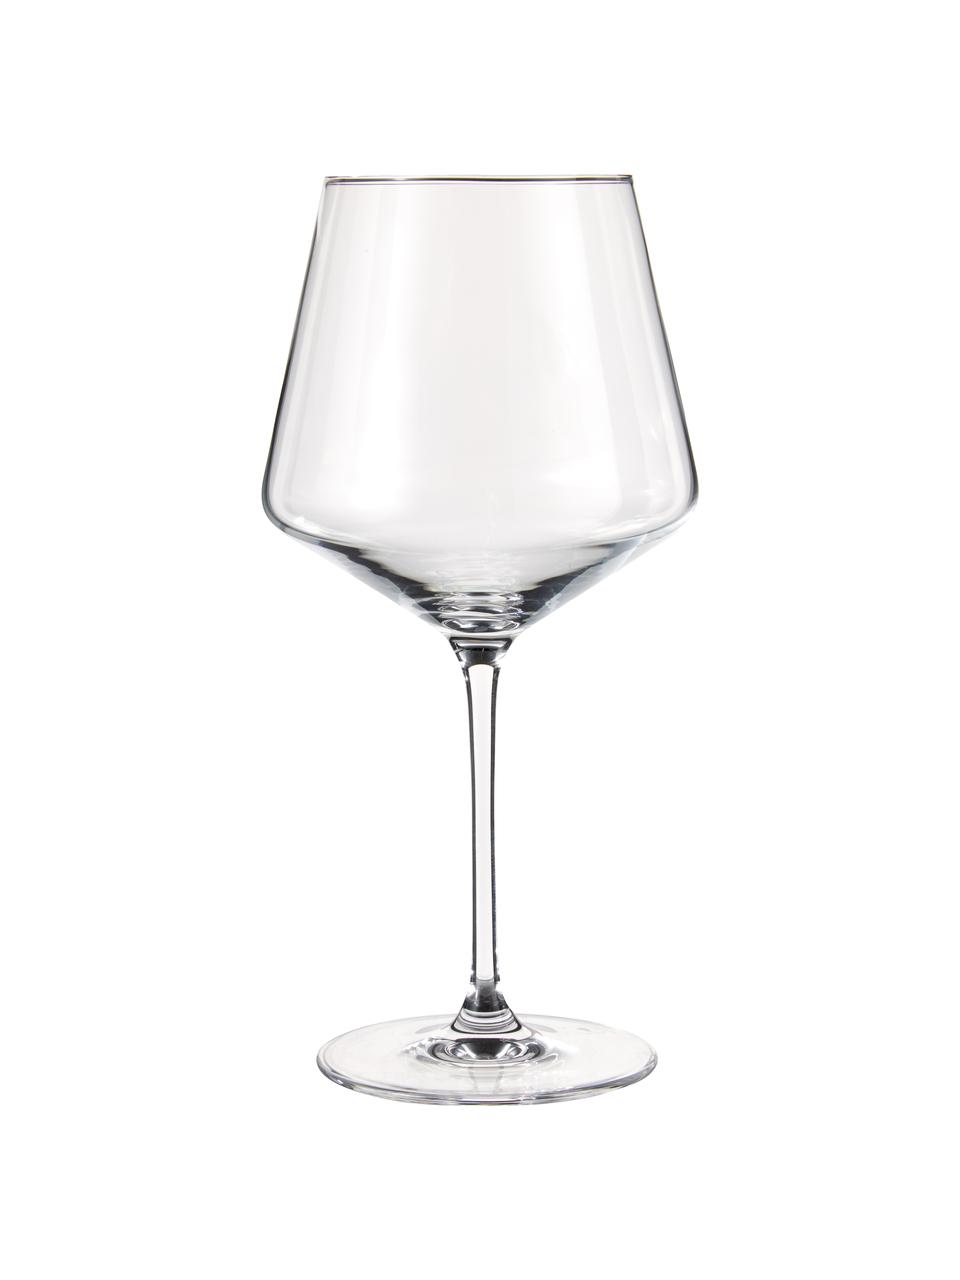 aptas para lavavajillas copas de vino de 560 ml y 1400 ml Leonardo Puccini 069528 Juego de 3 copas de vino con jarra de cristal 